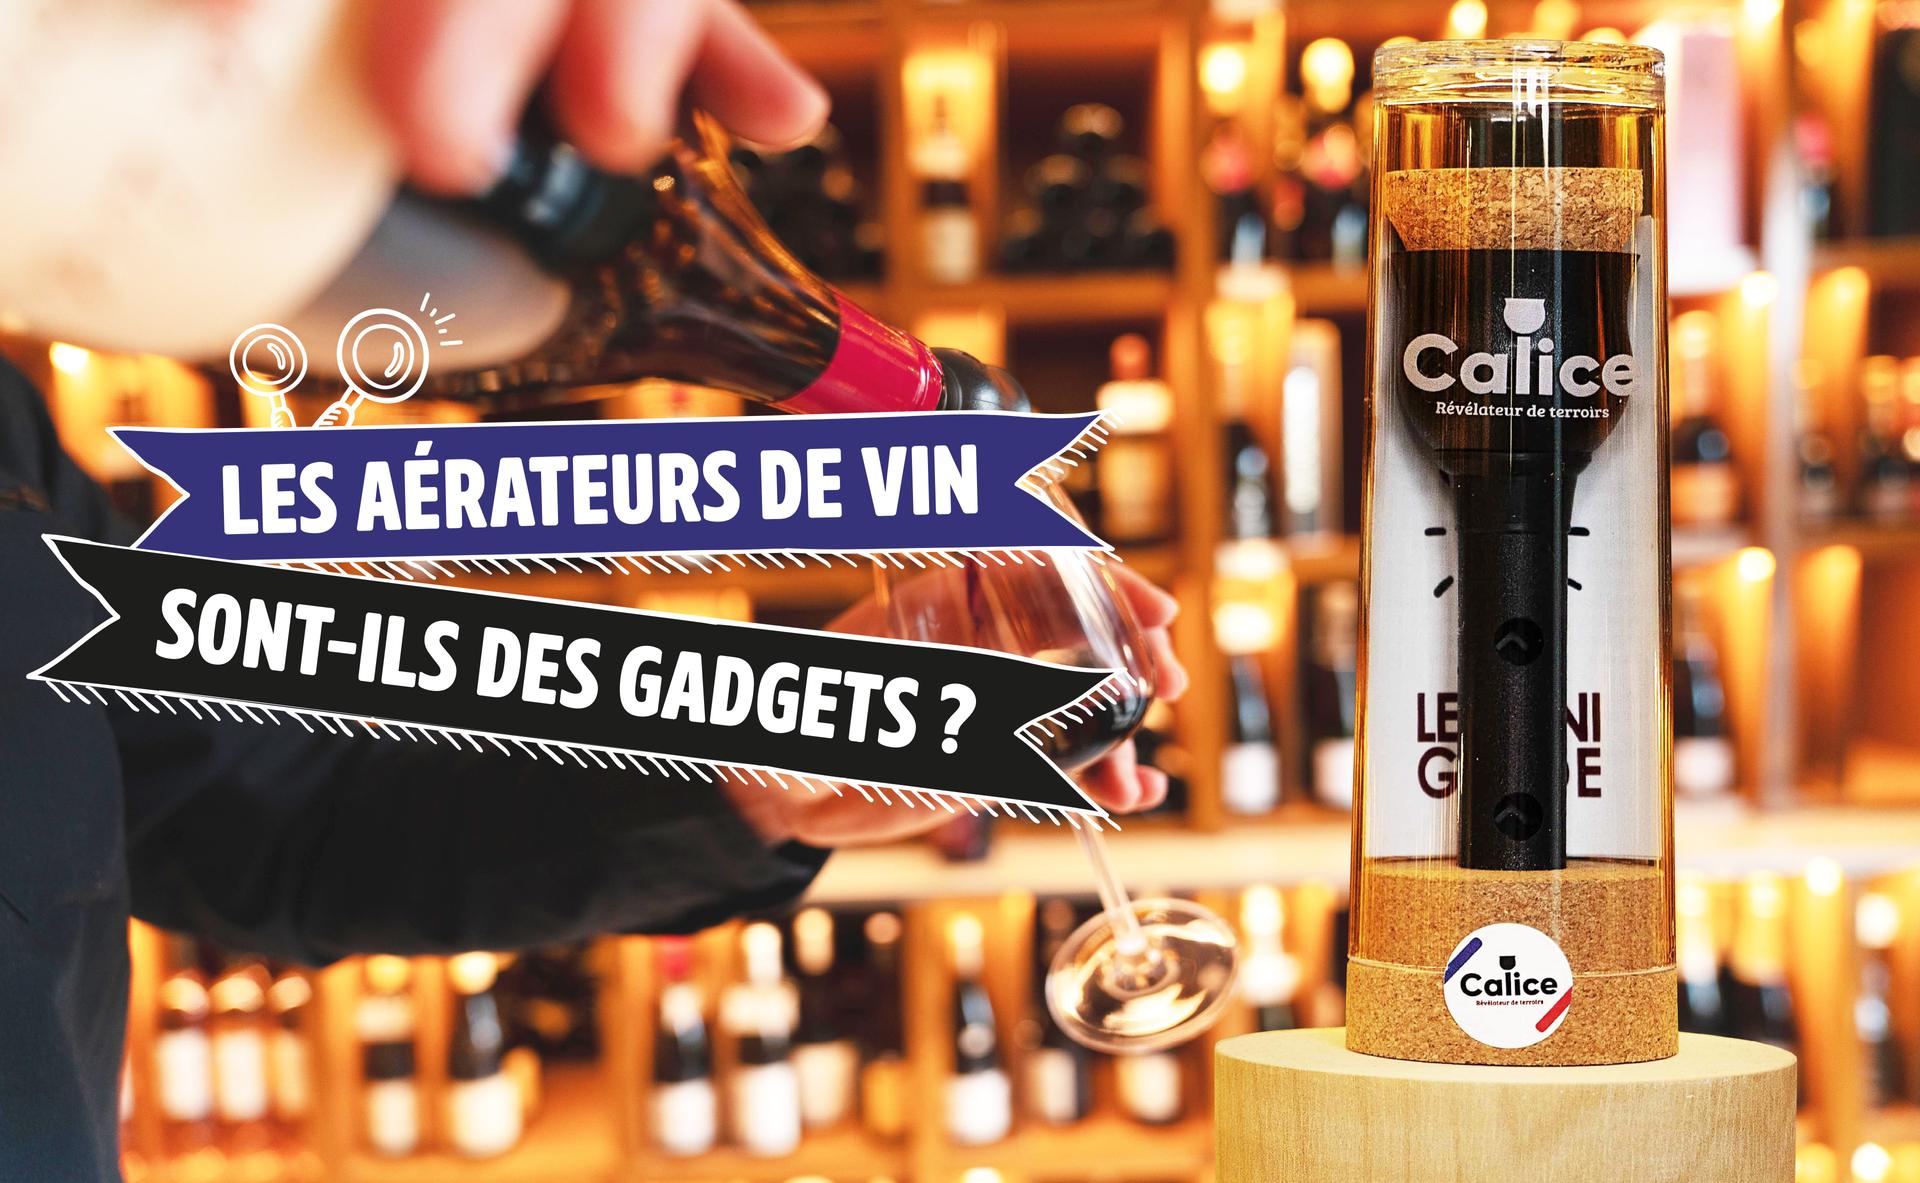 Les aérateurs de vin sont-ils des gadgets ?